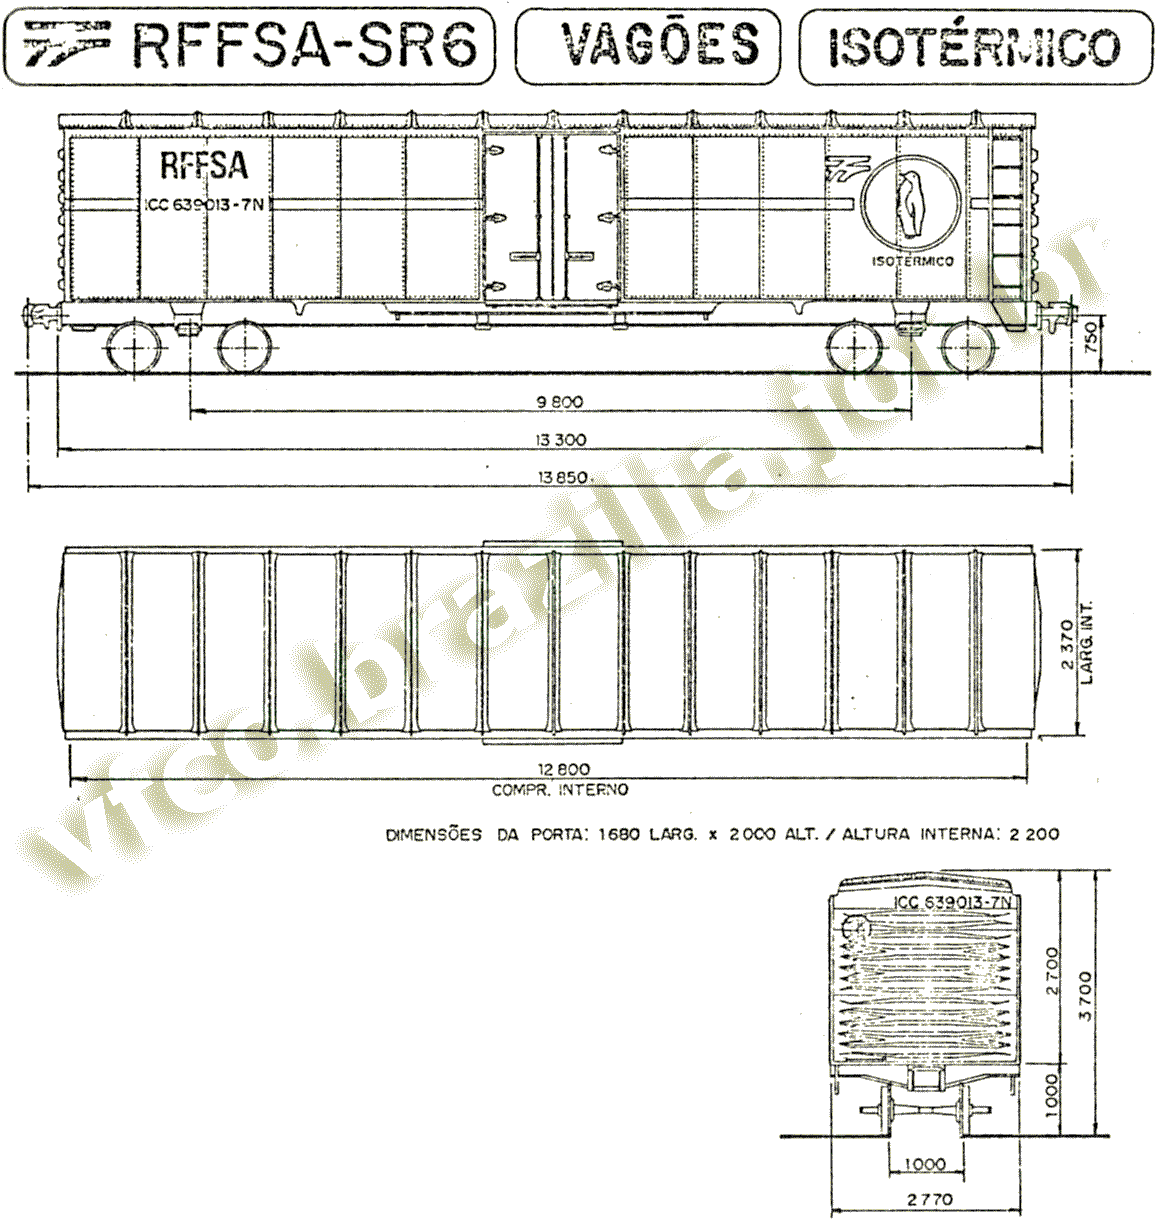 Desenho e medidas dos vagões frigoríficos ICC da RFFSA - SR6 - Porto Alegre